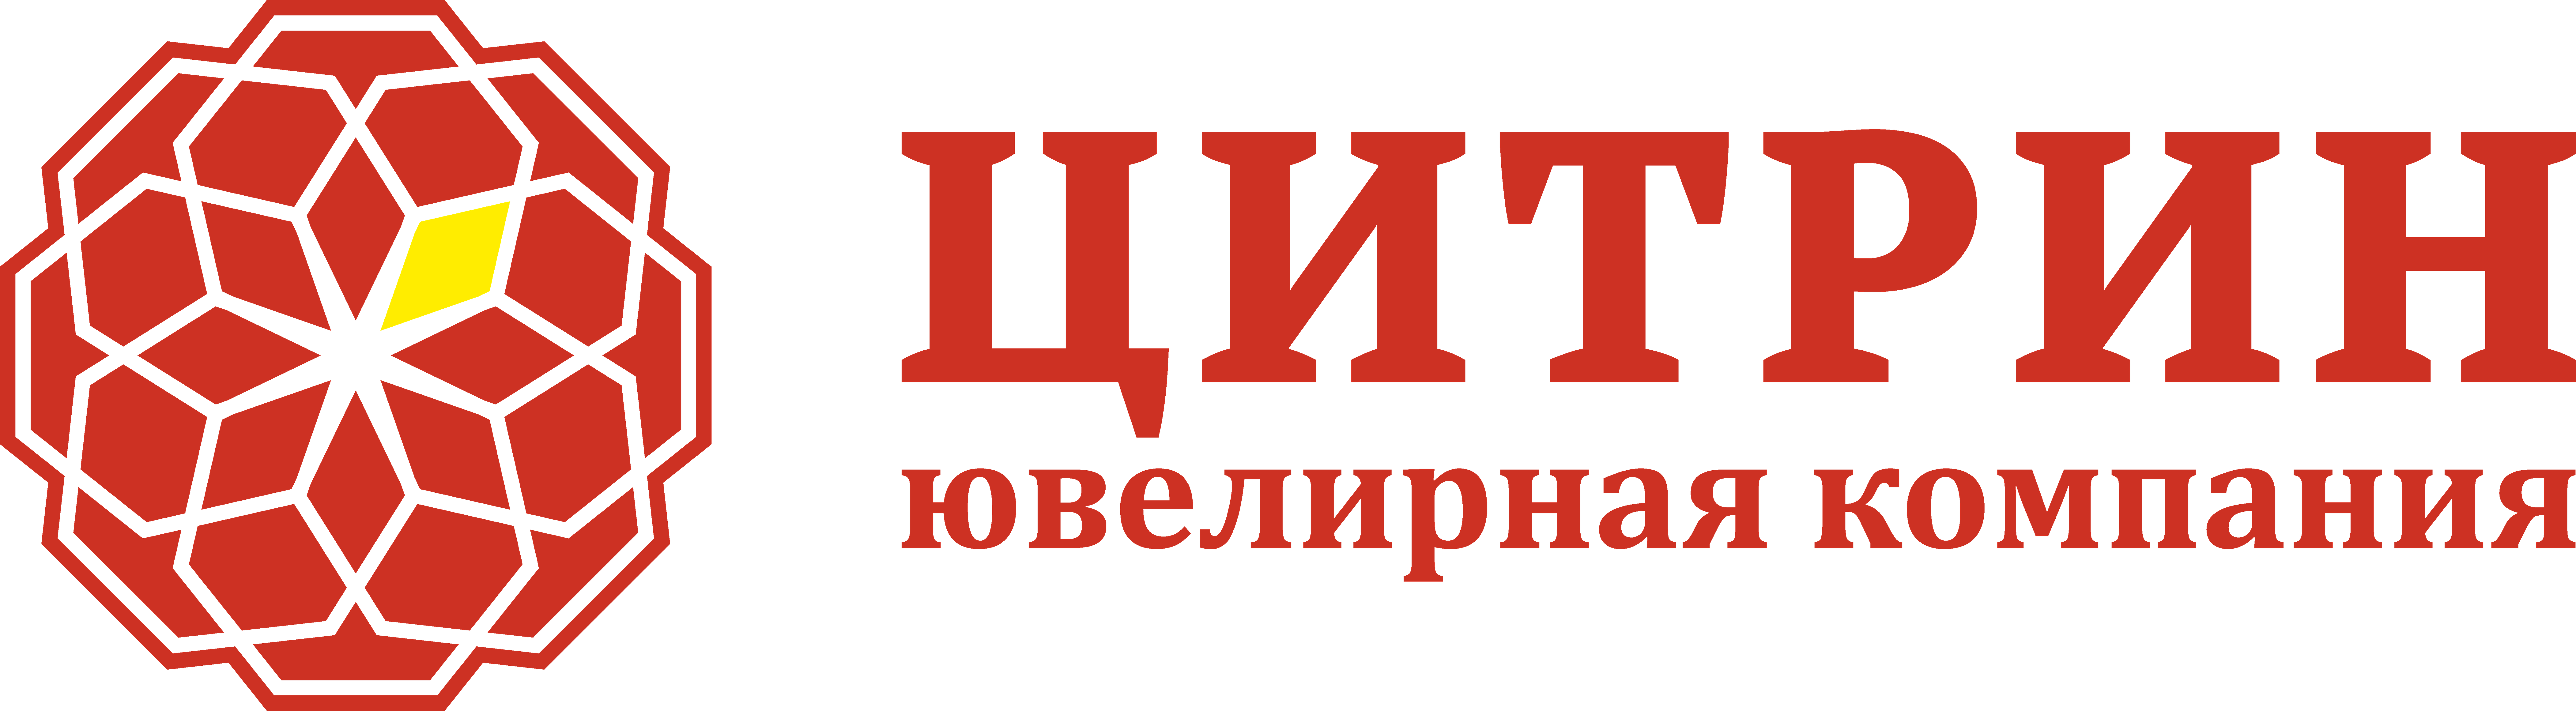 Ювелирная компания «Цитрин» (ИП Рыков А.В.)